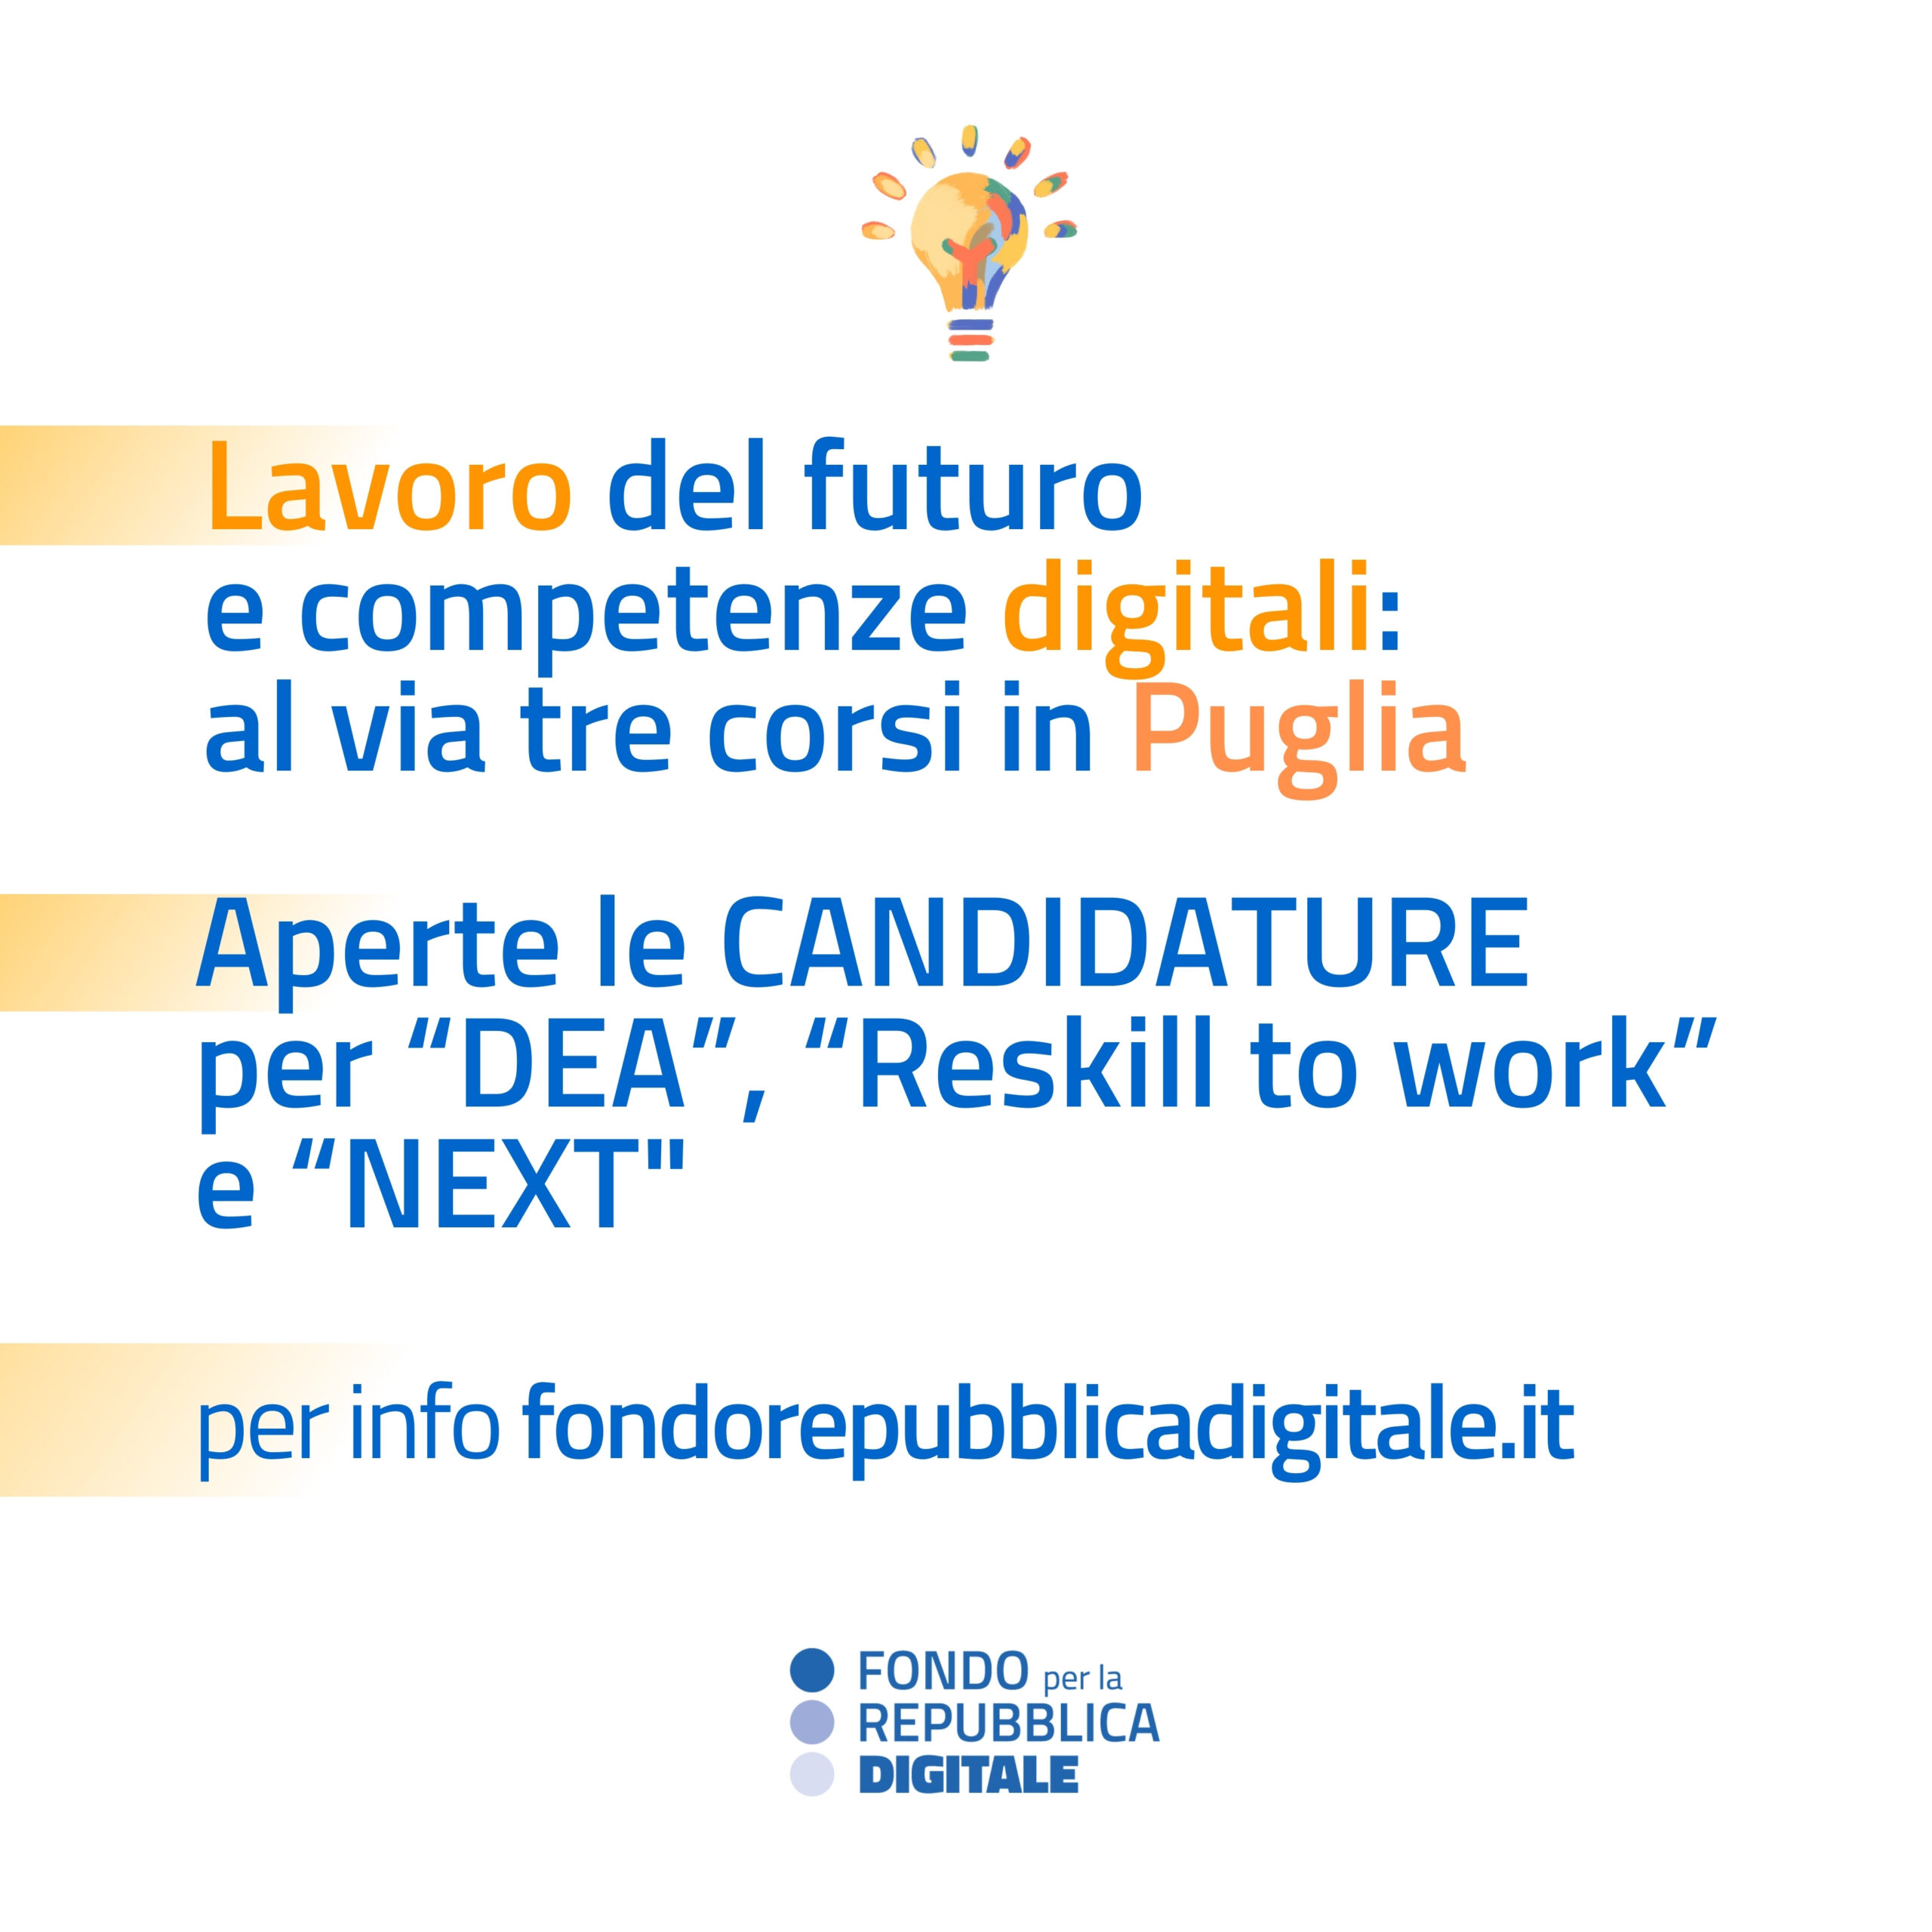 Al momento stai visualizzando Lavoro del futuro e competenze digitali: al via tre corsi in Puglia